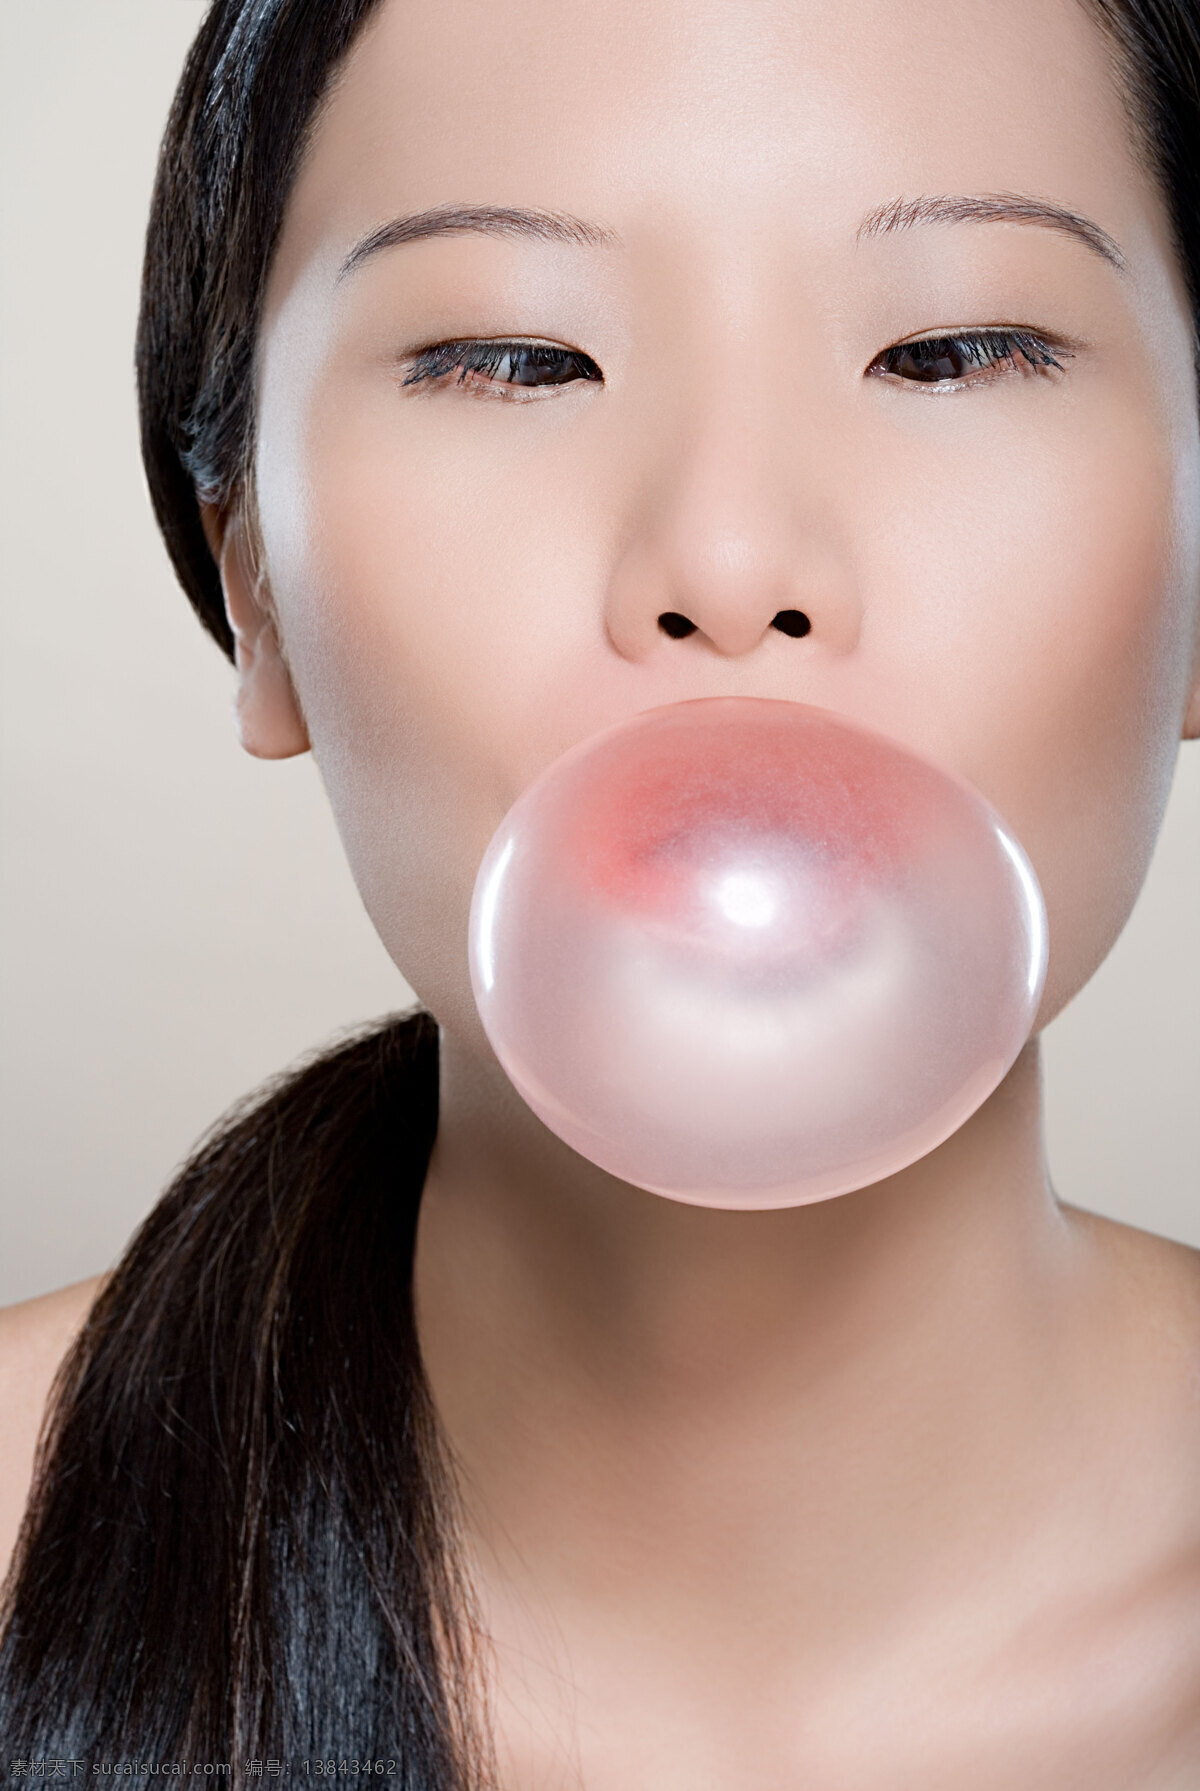 美女 吹 泡泡糖 女人 欧美 性感 创意 护肤 粉色 糖果 吹泡泡糖 海报 高清图片 美女图片 人物图片